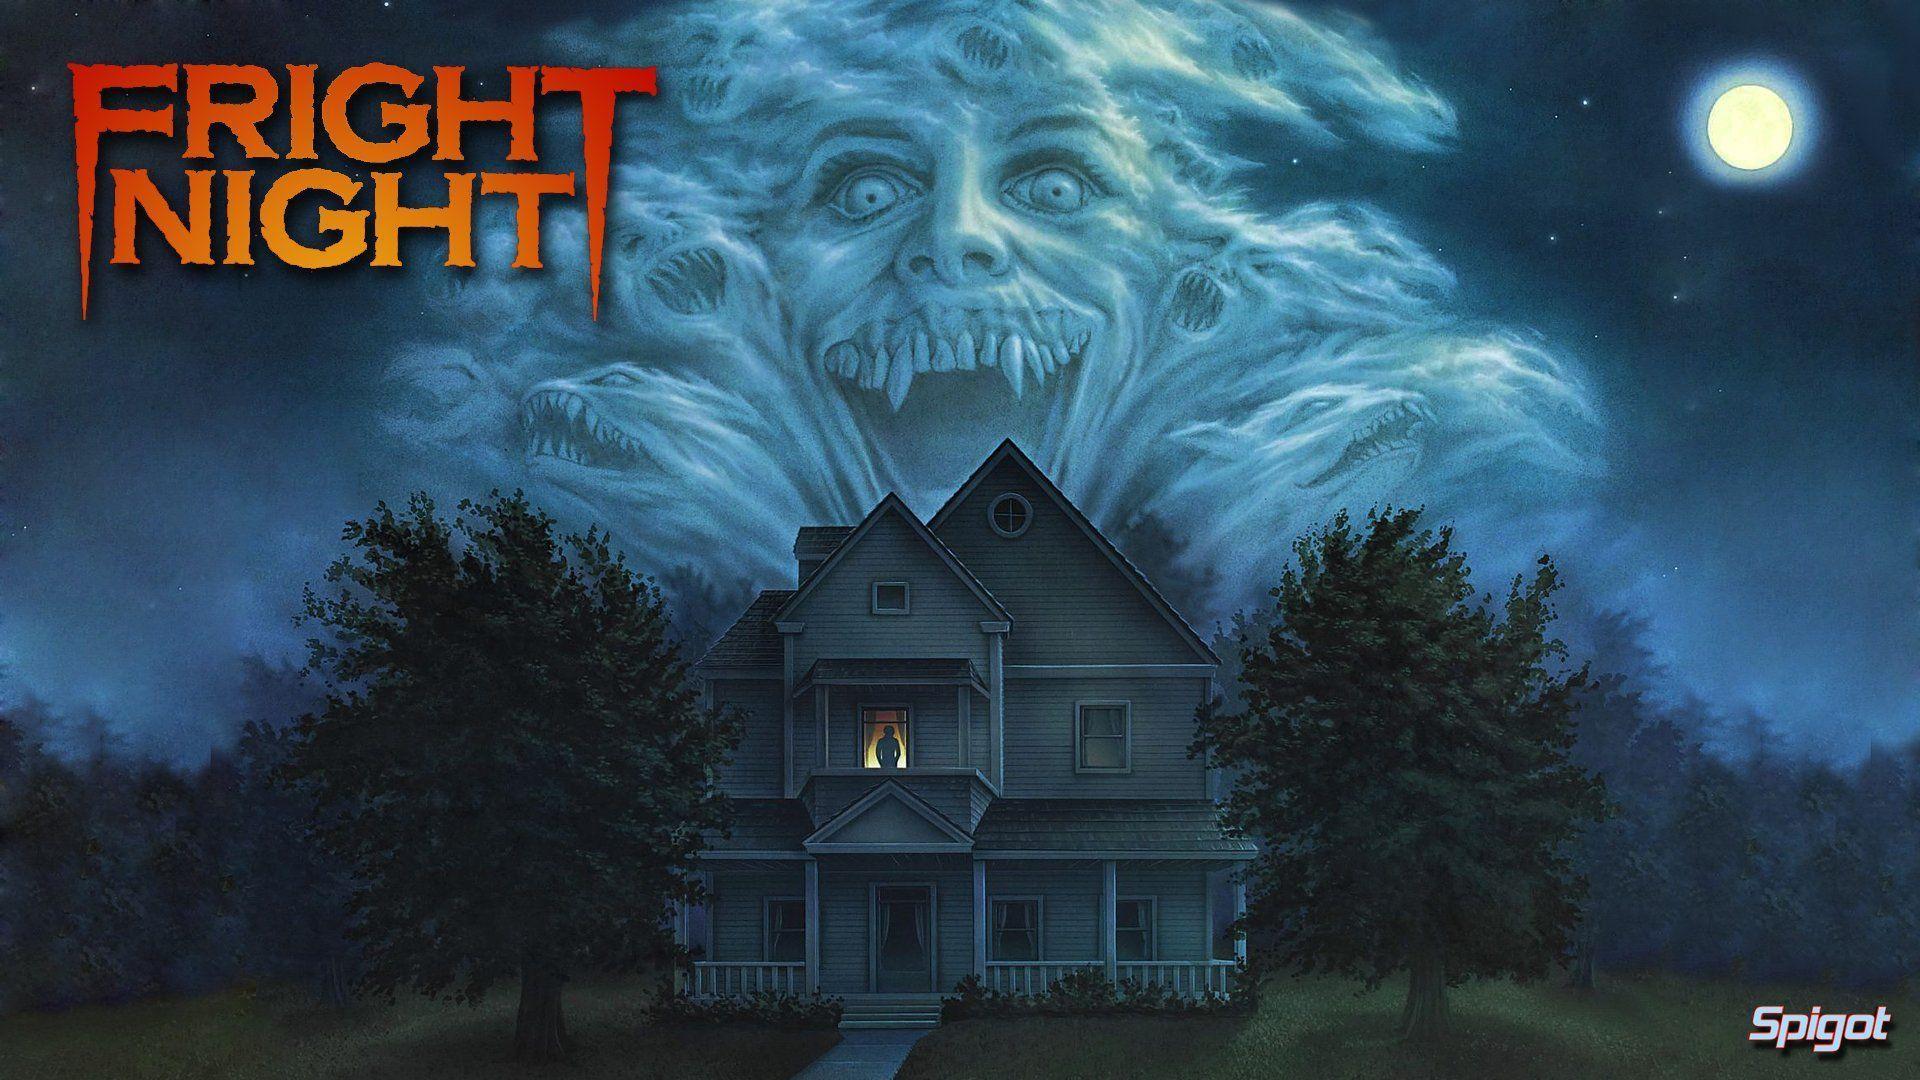 FRIGHT NIGHT comedy horror dark movie film halloween vampire